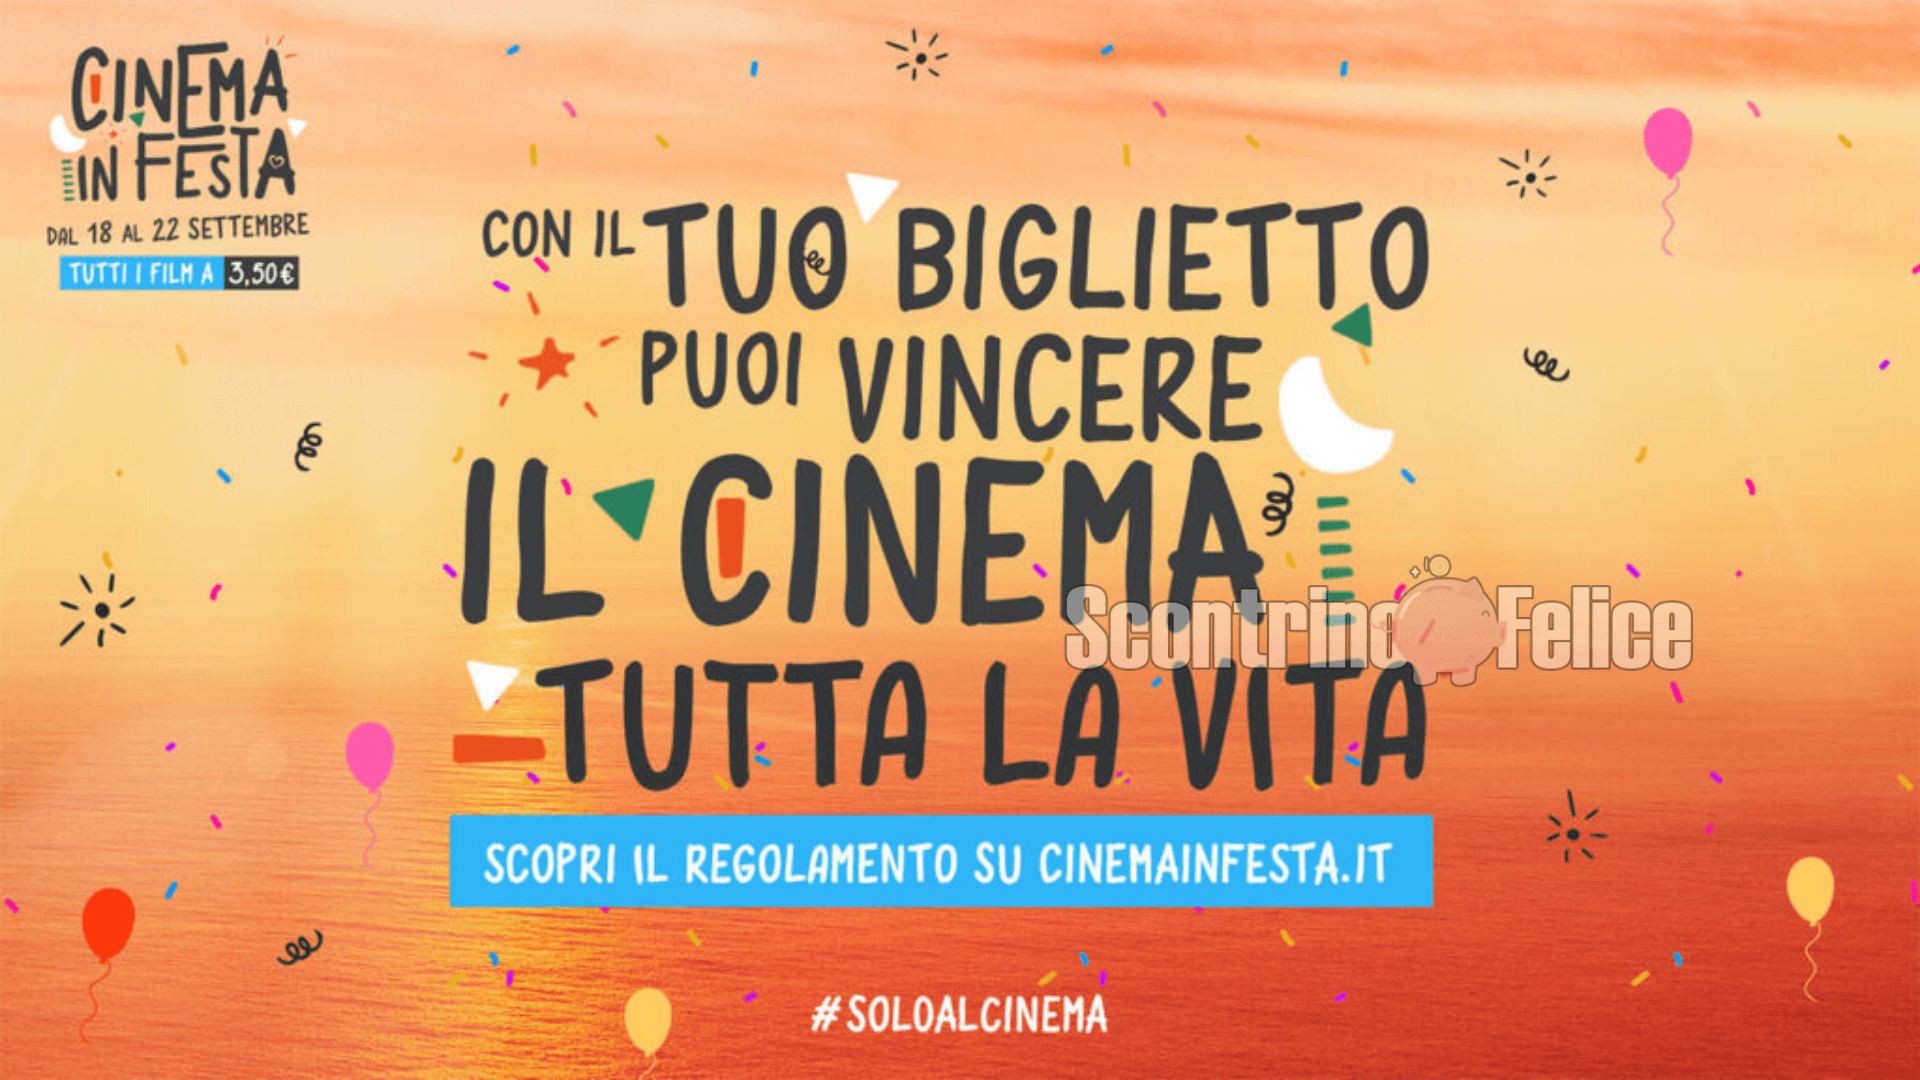 Cinema in Festa 2022: biglietti a solo 3,50 euro e vinci cinema GRATIS per tutta la vita! 4